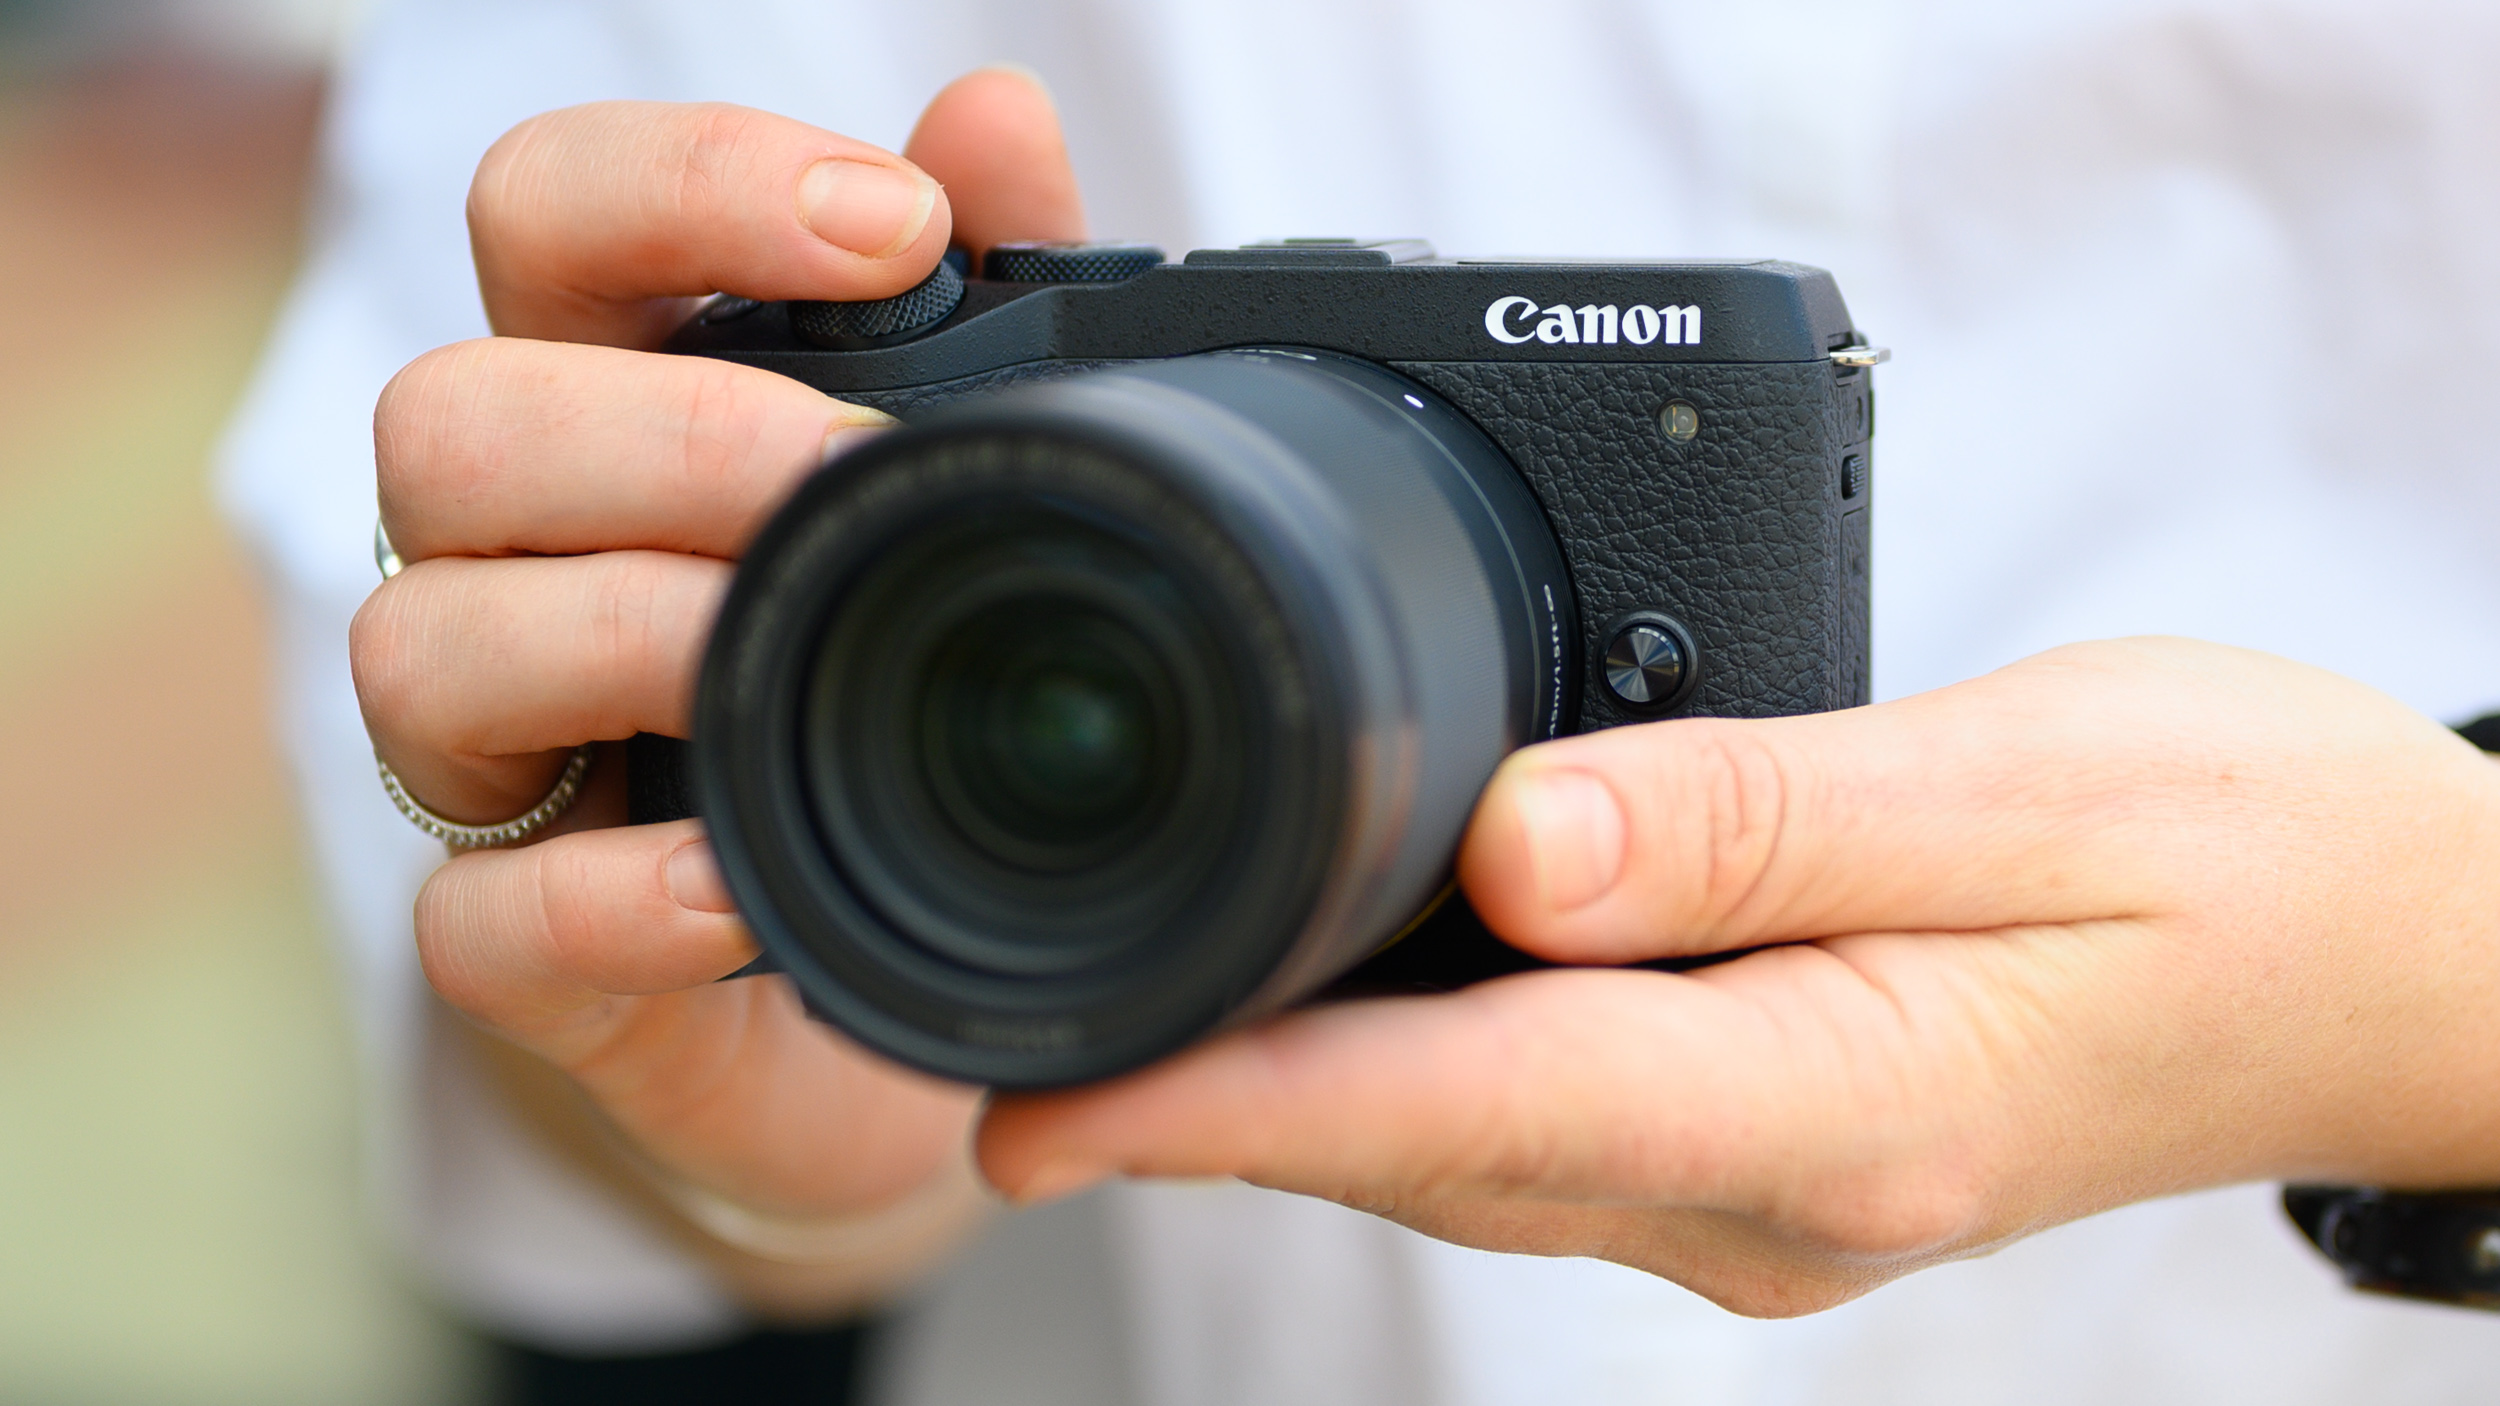 По слухам, сверхширокоугольный объектив RF-S — это то, в чем остро нуждаются камеры Canon APS-C